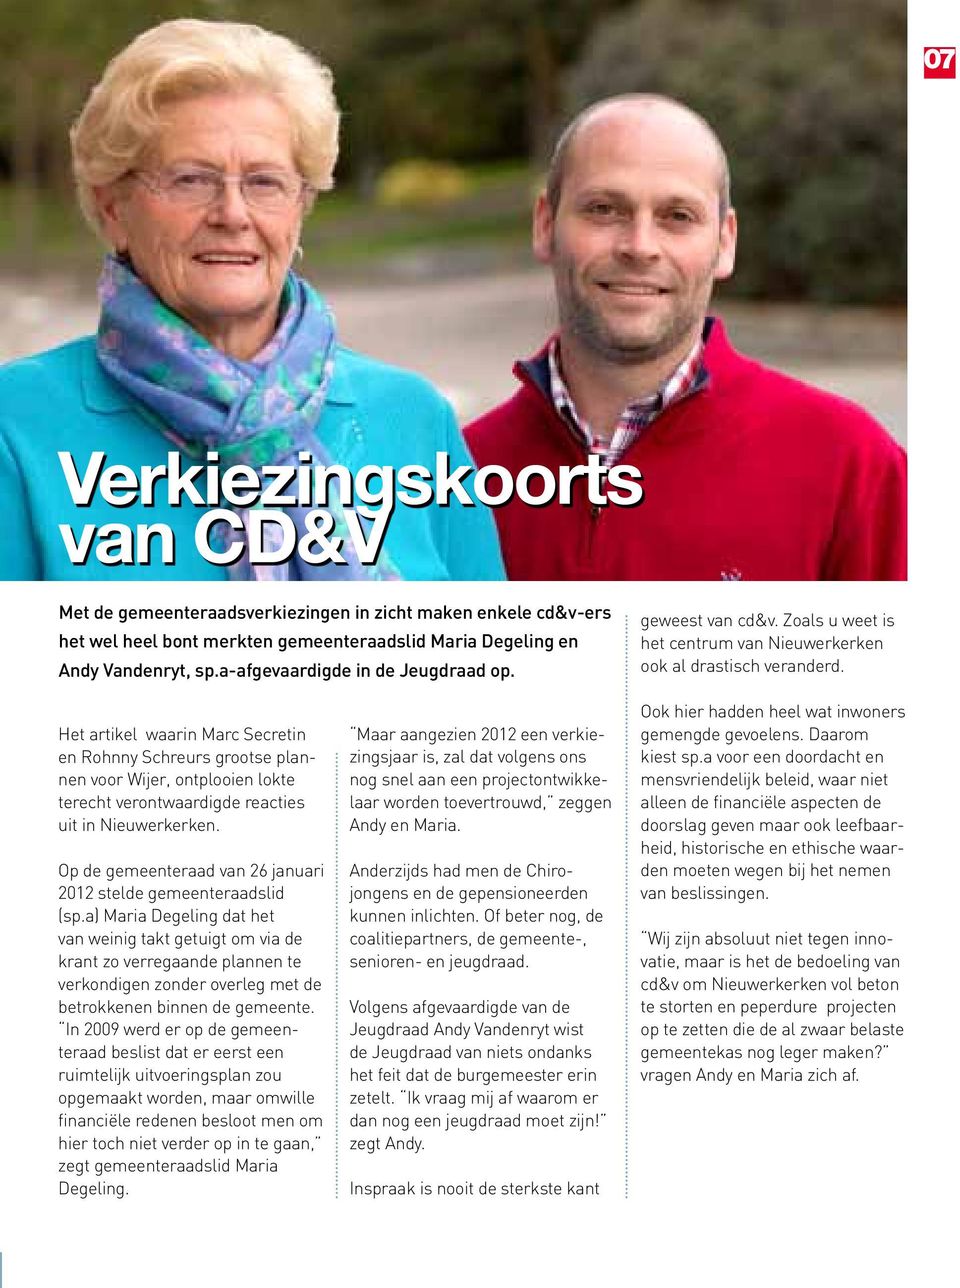 Het artikel waarin Marc Secretin en Rohnny Schreurs grootse plannen voor Wijer, ontplooien lokte terecht verontwaardigde reacties uit in Nieuwerkerken.